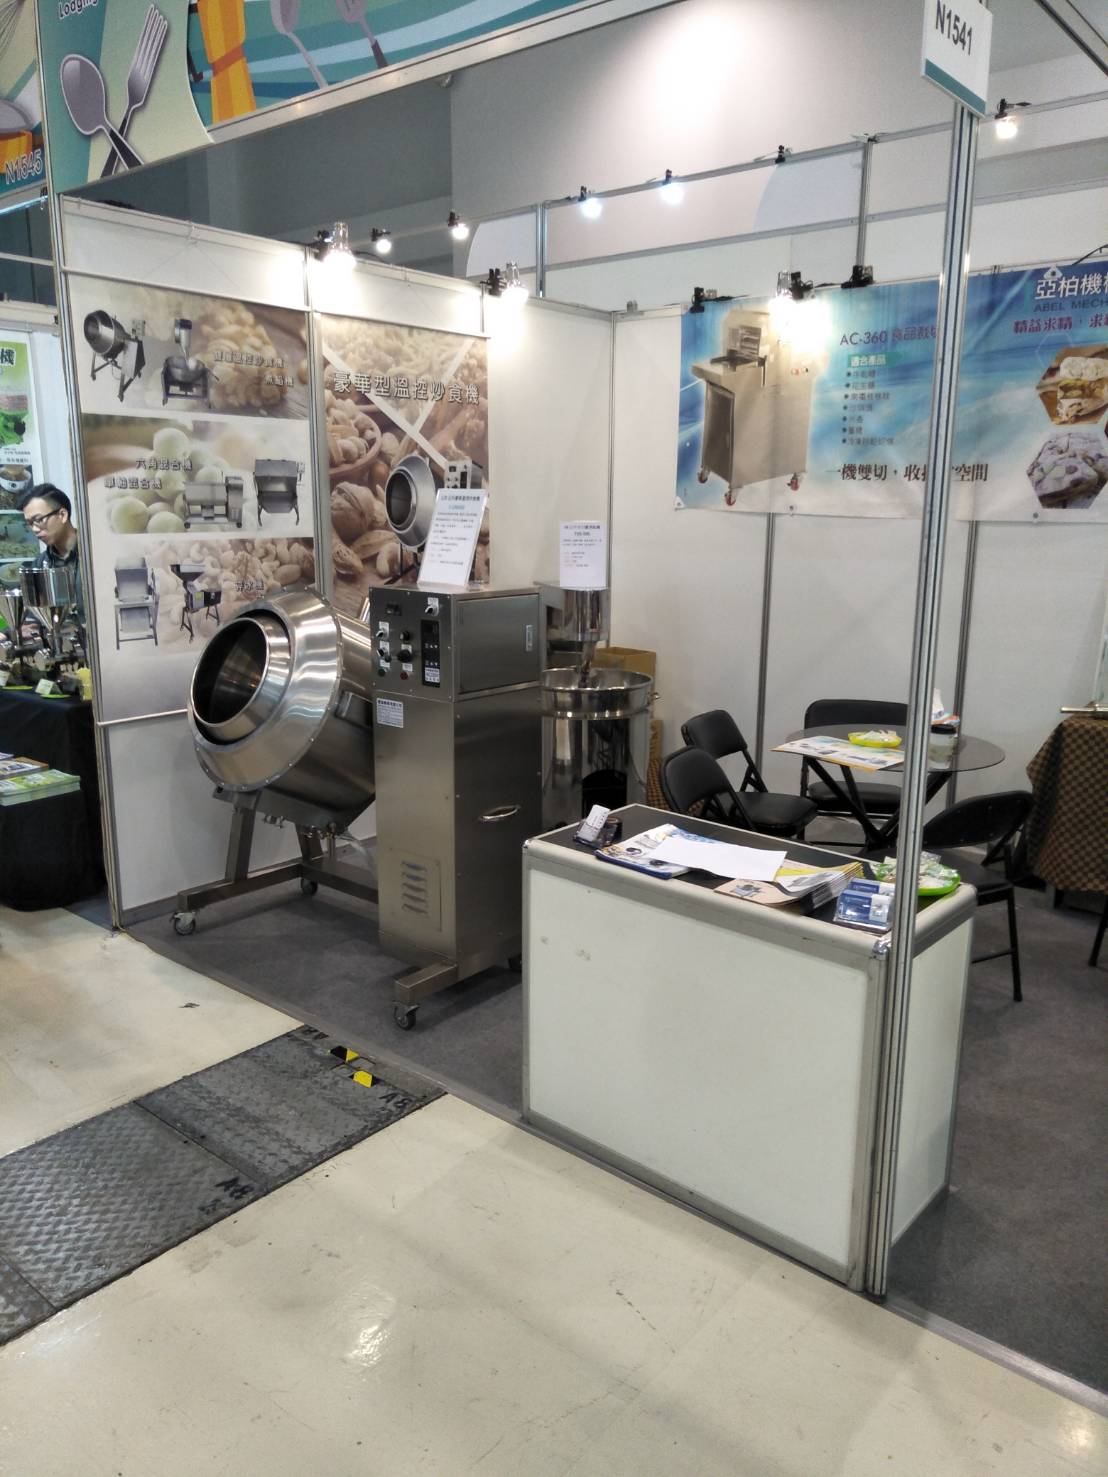 威綸機械,台北國際烘焙暨設備展,台中食品機械